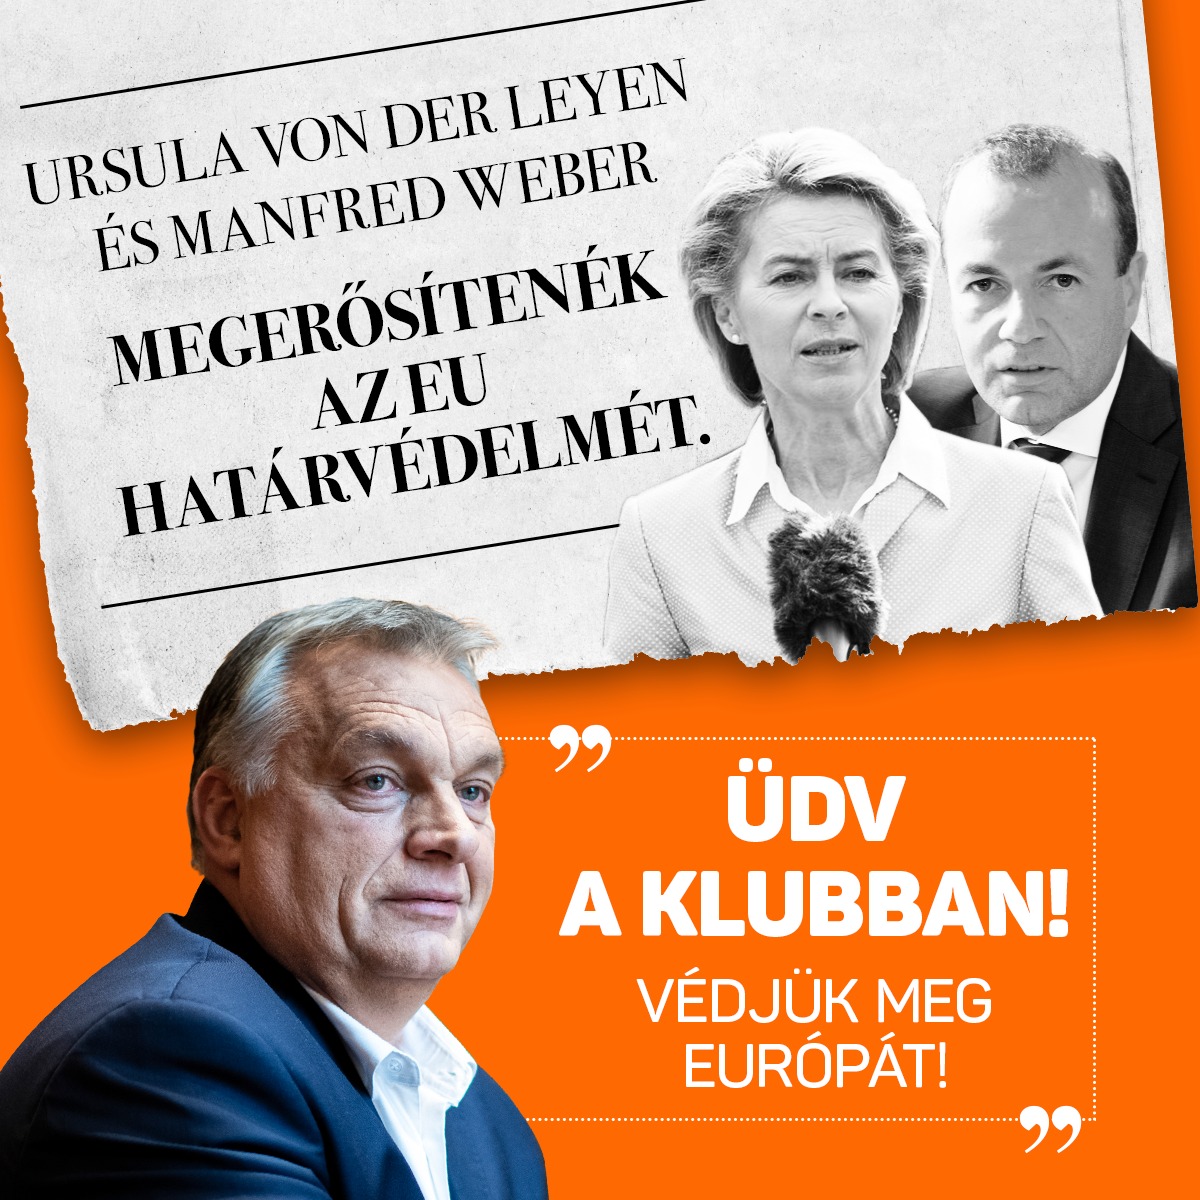 Ursula von der Leyen és Manfred Weber megerősítenék az EU határvédelmét. „Üdv a klubban! Mi 10 éve harcolunk erősebb határokért. Mint kiderült, nekünk, magyaroknak végig igazunk volt. Védjük meg Európát!” – Orbán Viktor